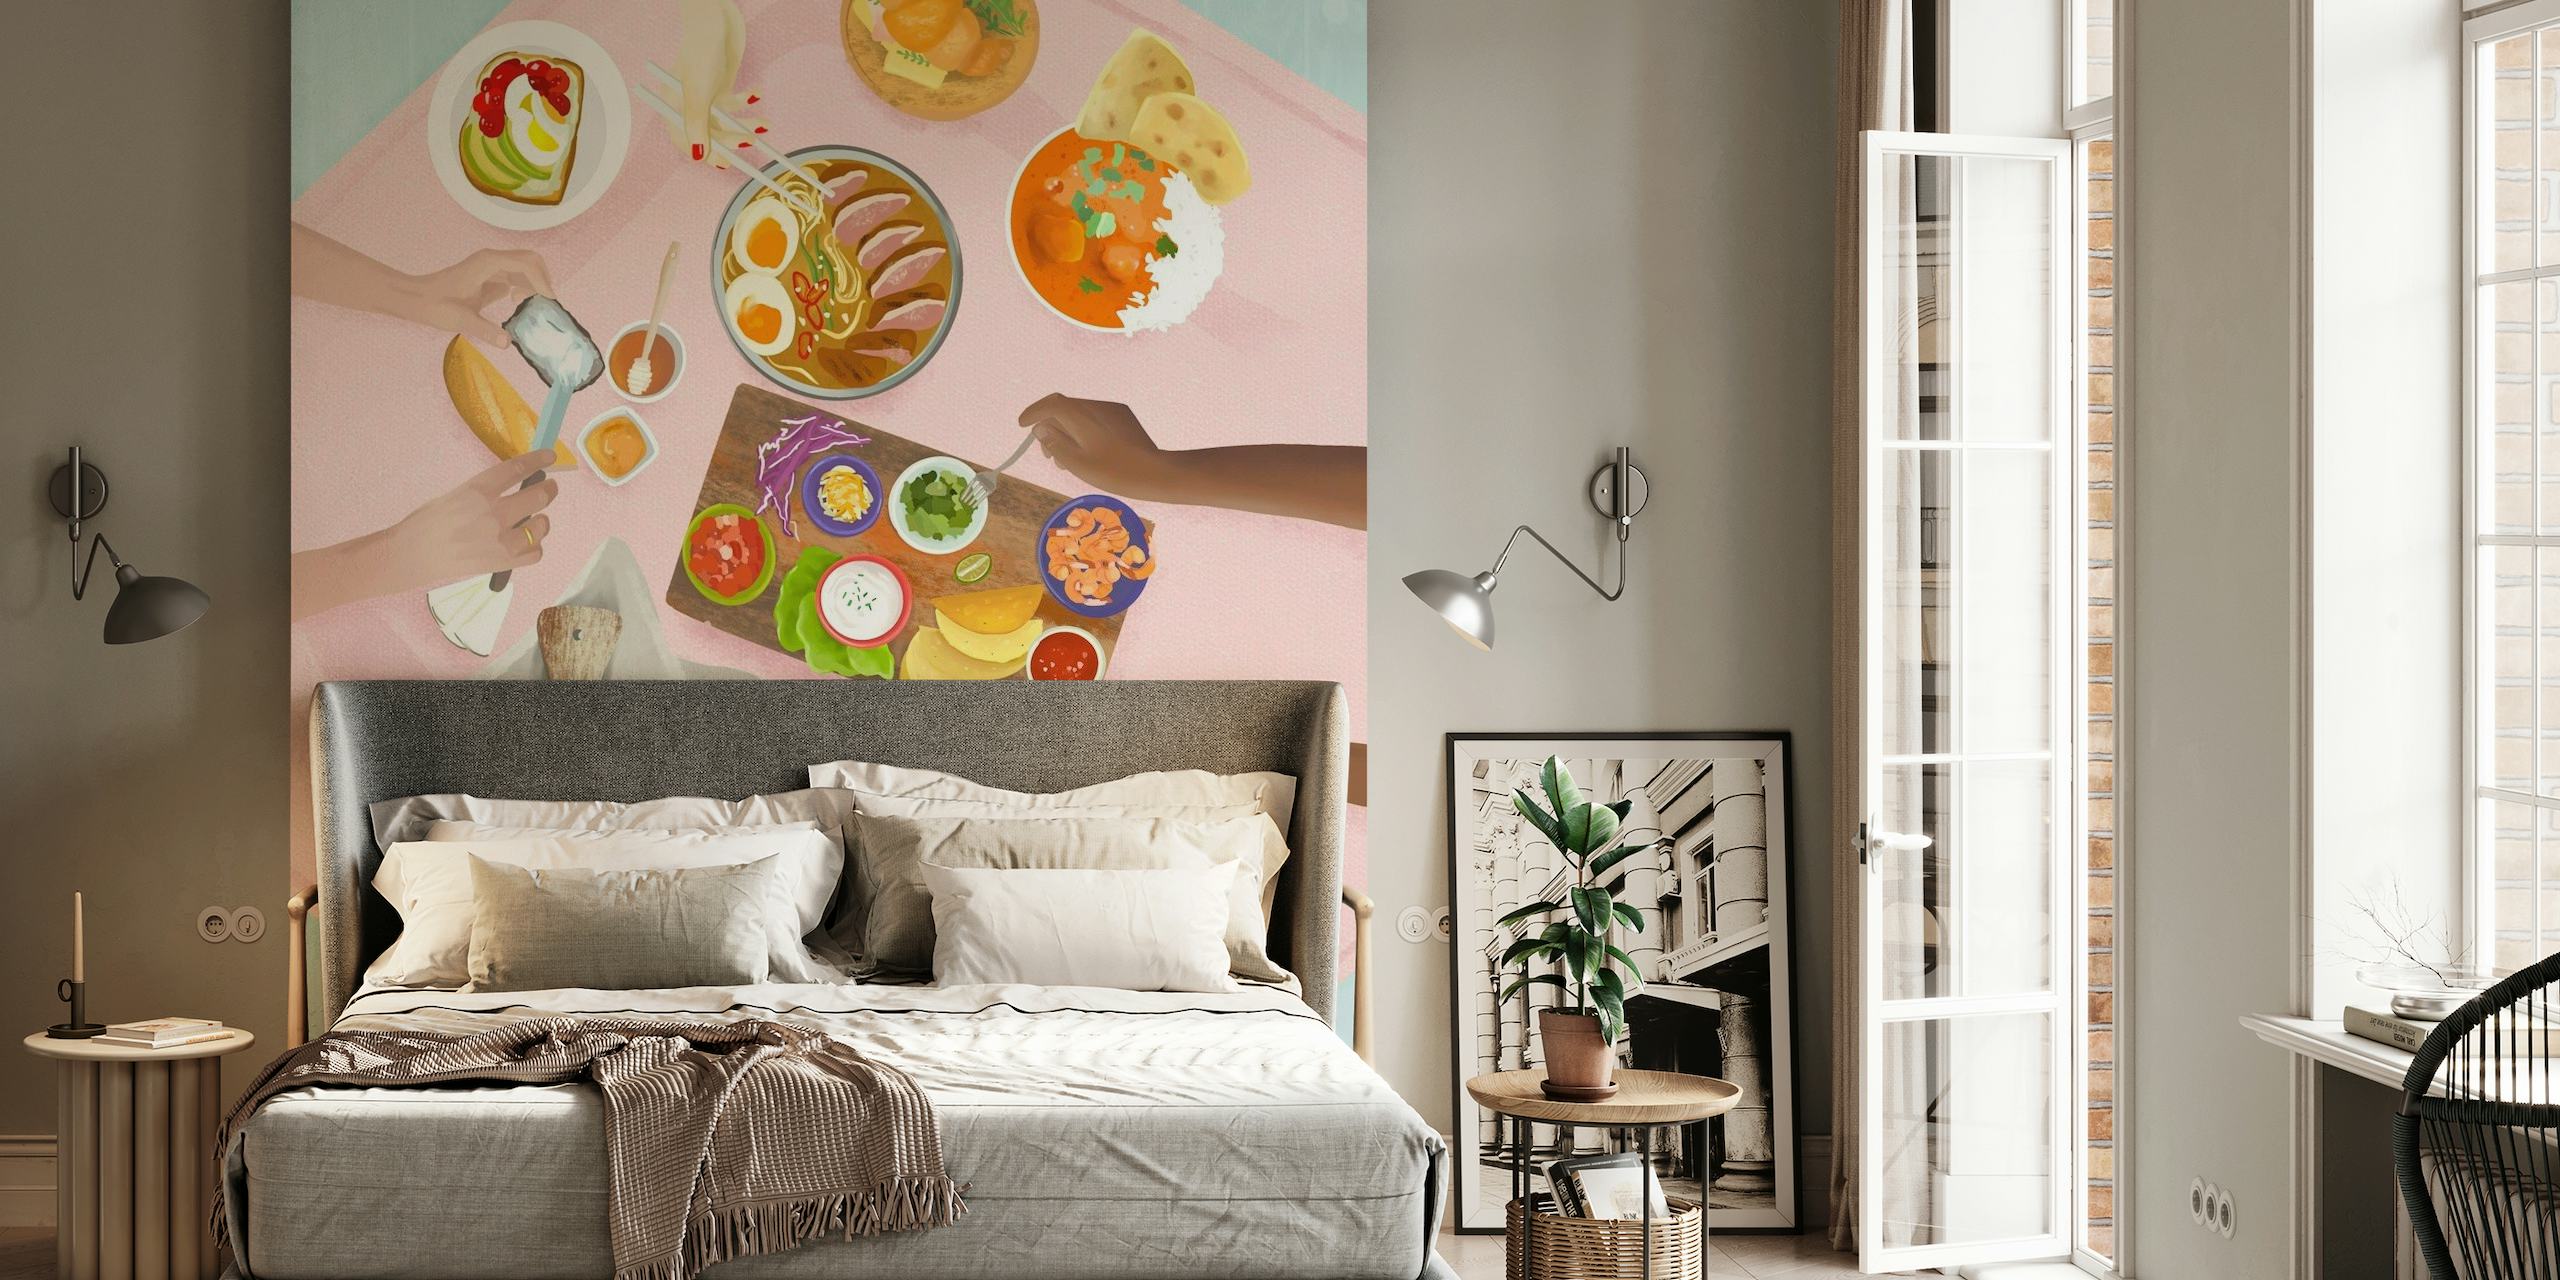 Kuvitettu brunssi-aiheinen seinämaalaus, jonka yläpuolella on ruokapöytä, jossa on erilaisia ruokia ja kukkia